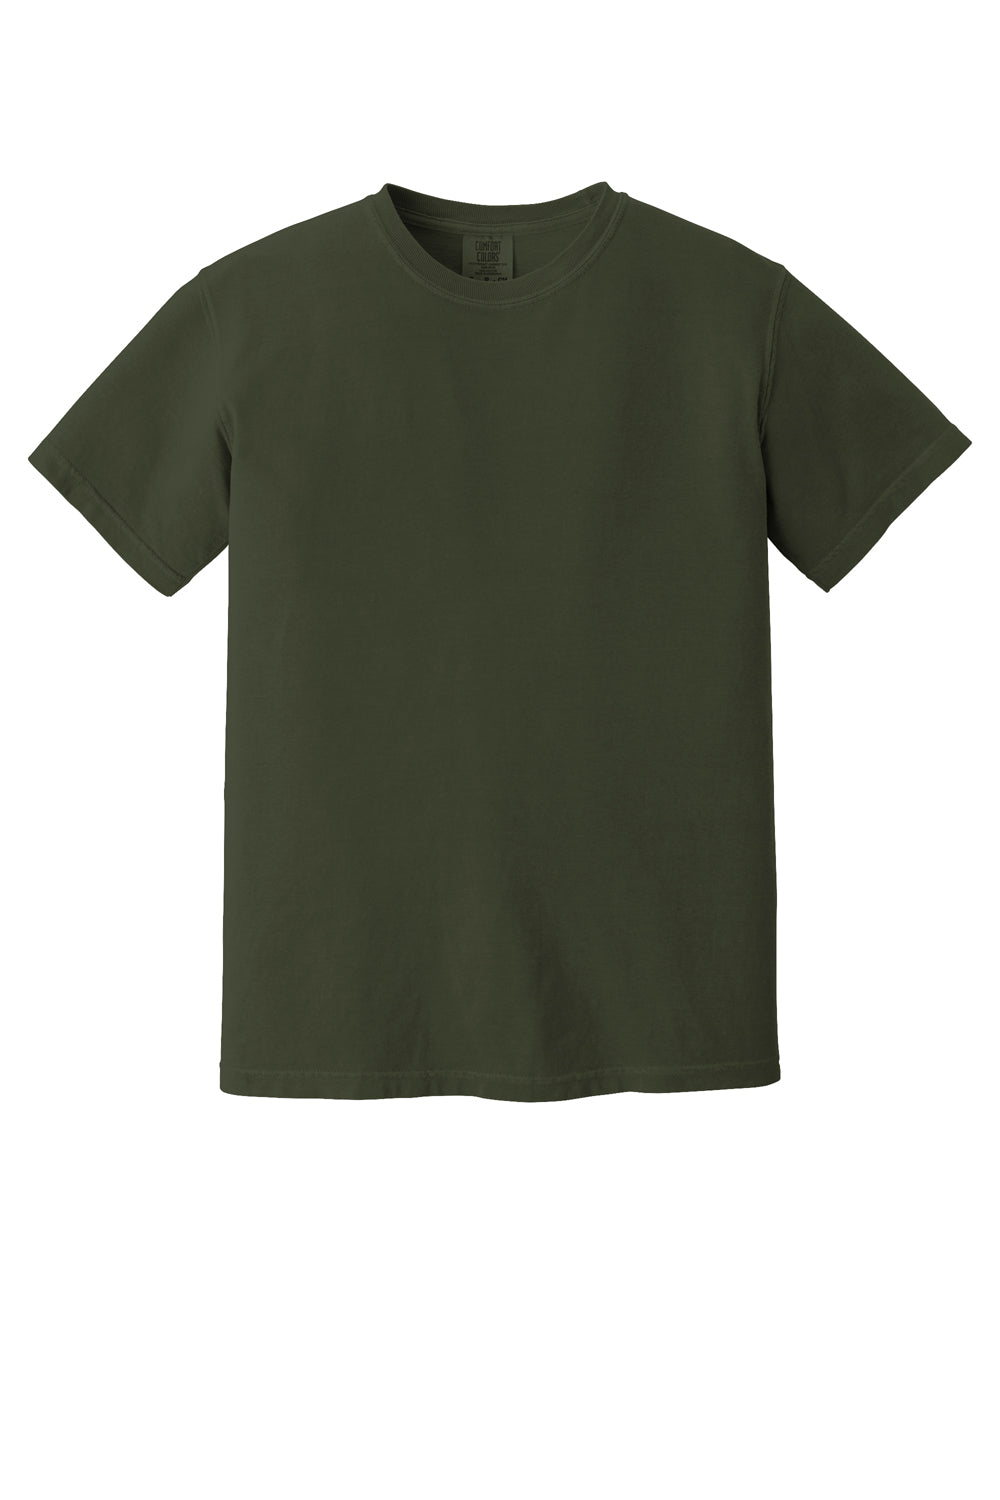 Comfort Colors 1717/C1717 Mens Short Sleeve Crewneck T-Shirt Hemp Green Flat Front